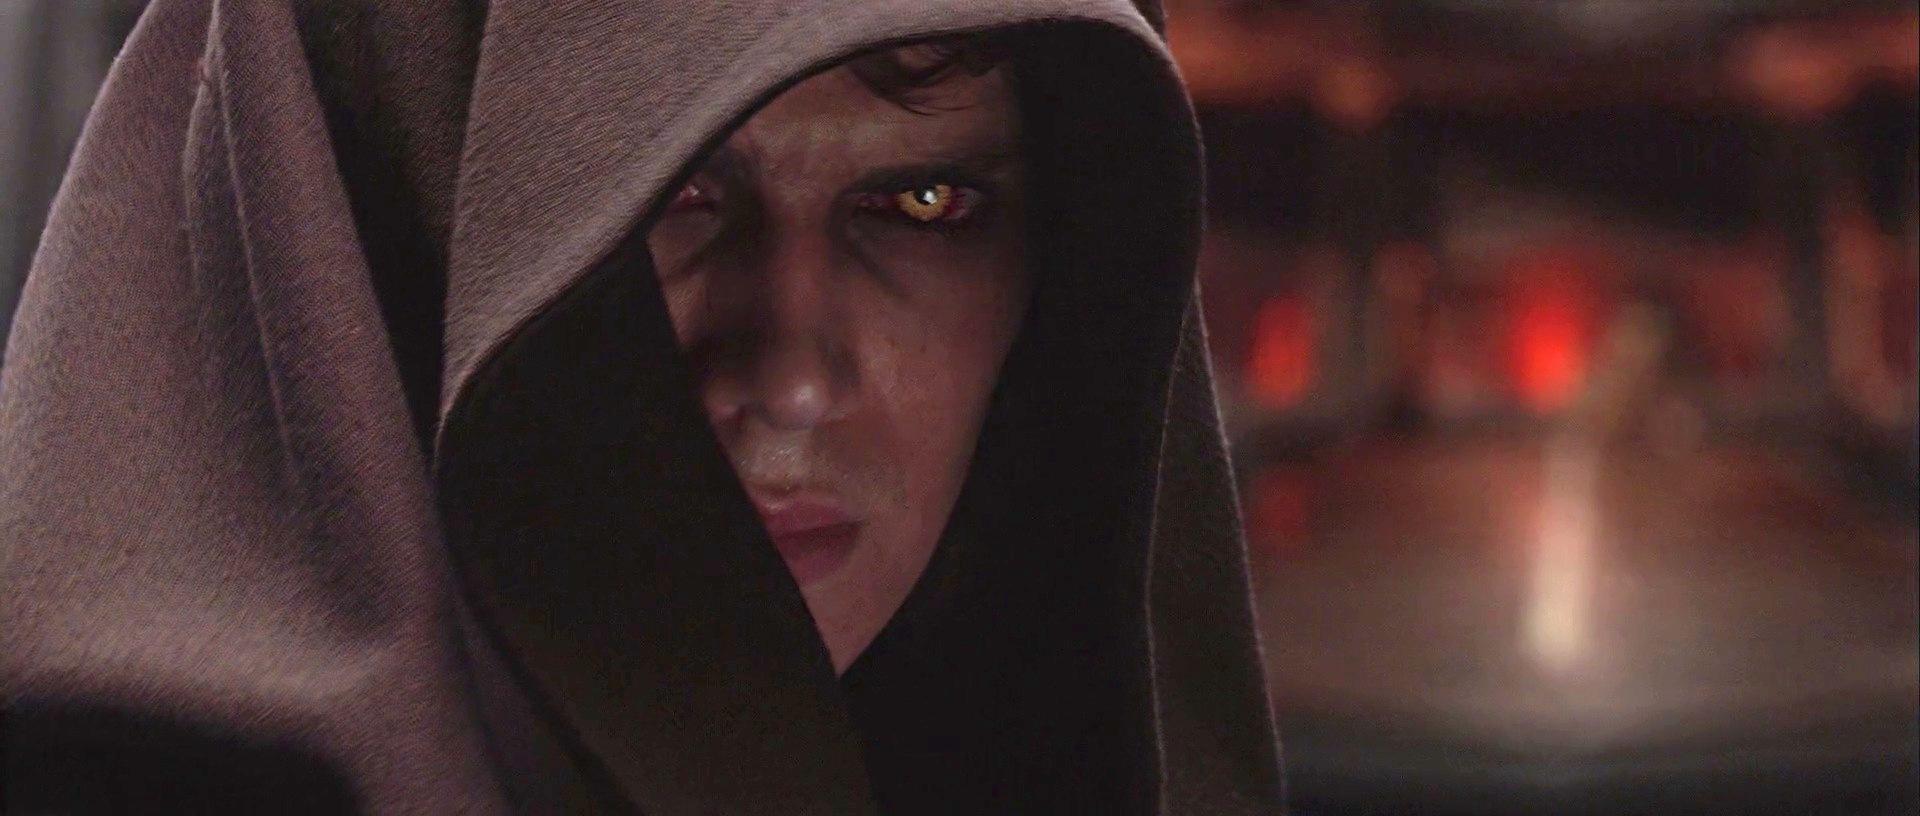 Hayden Christensen abbraccia il lato oscuro in "La vendetta dei Sith".